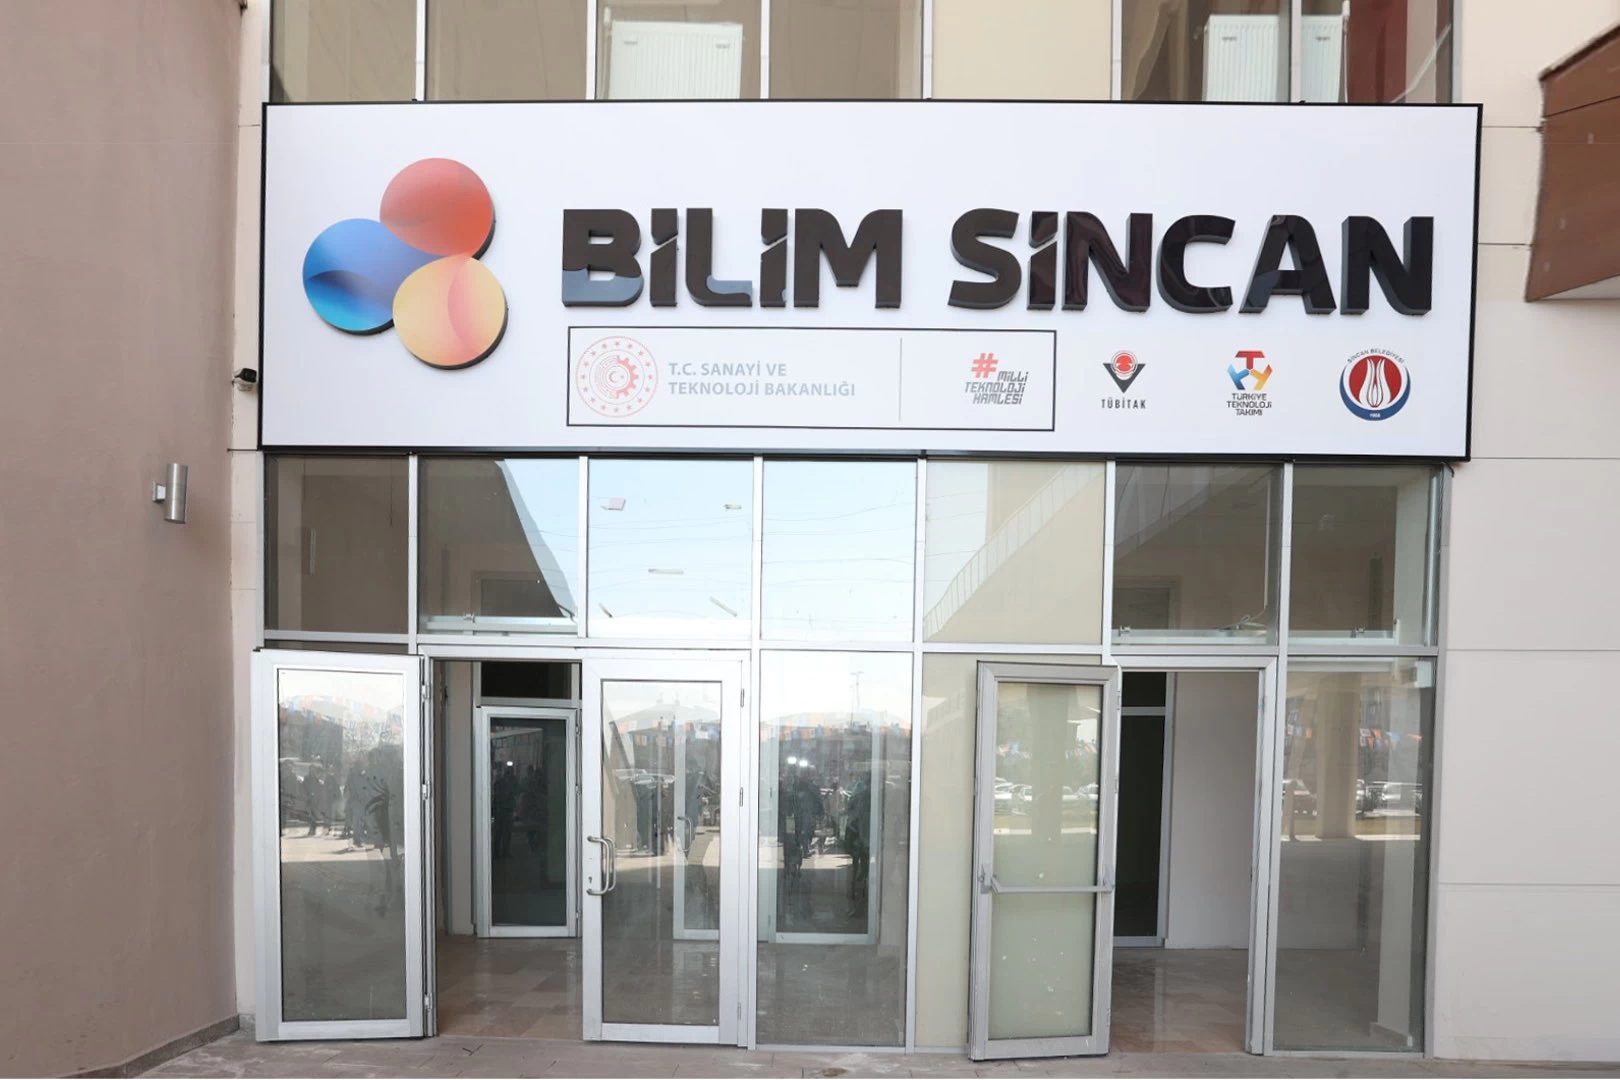 Sincan Belediye Başkanı Murat Ercan Bilim Sincan'ın yakında açılacağını söyledi